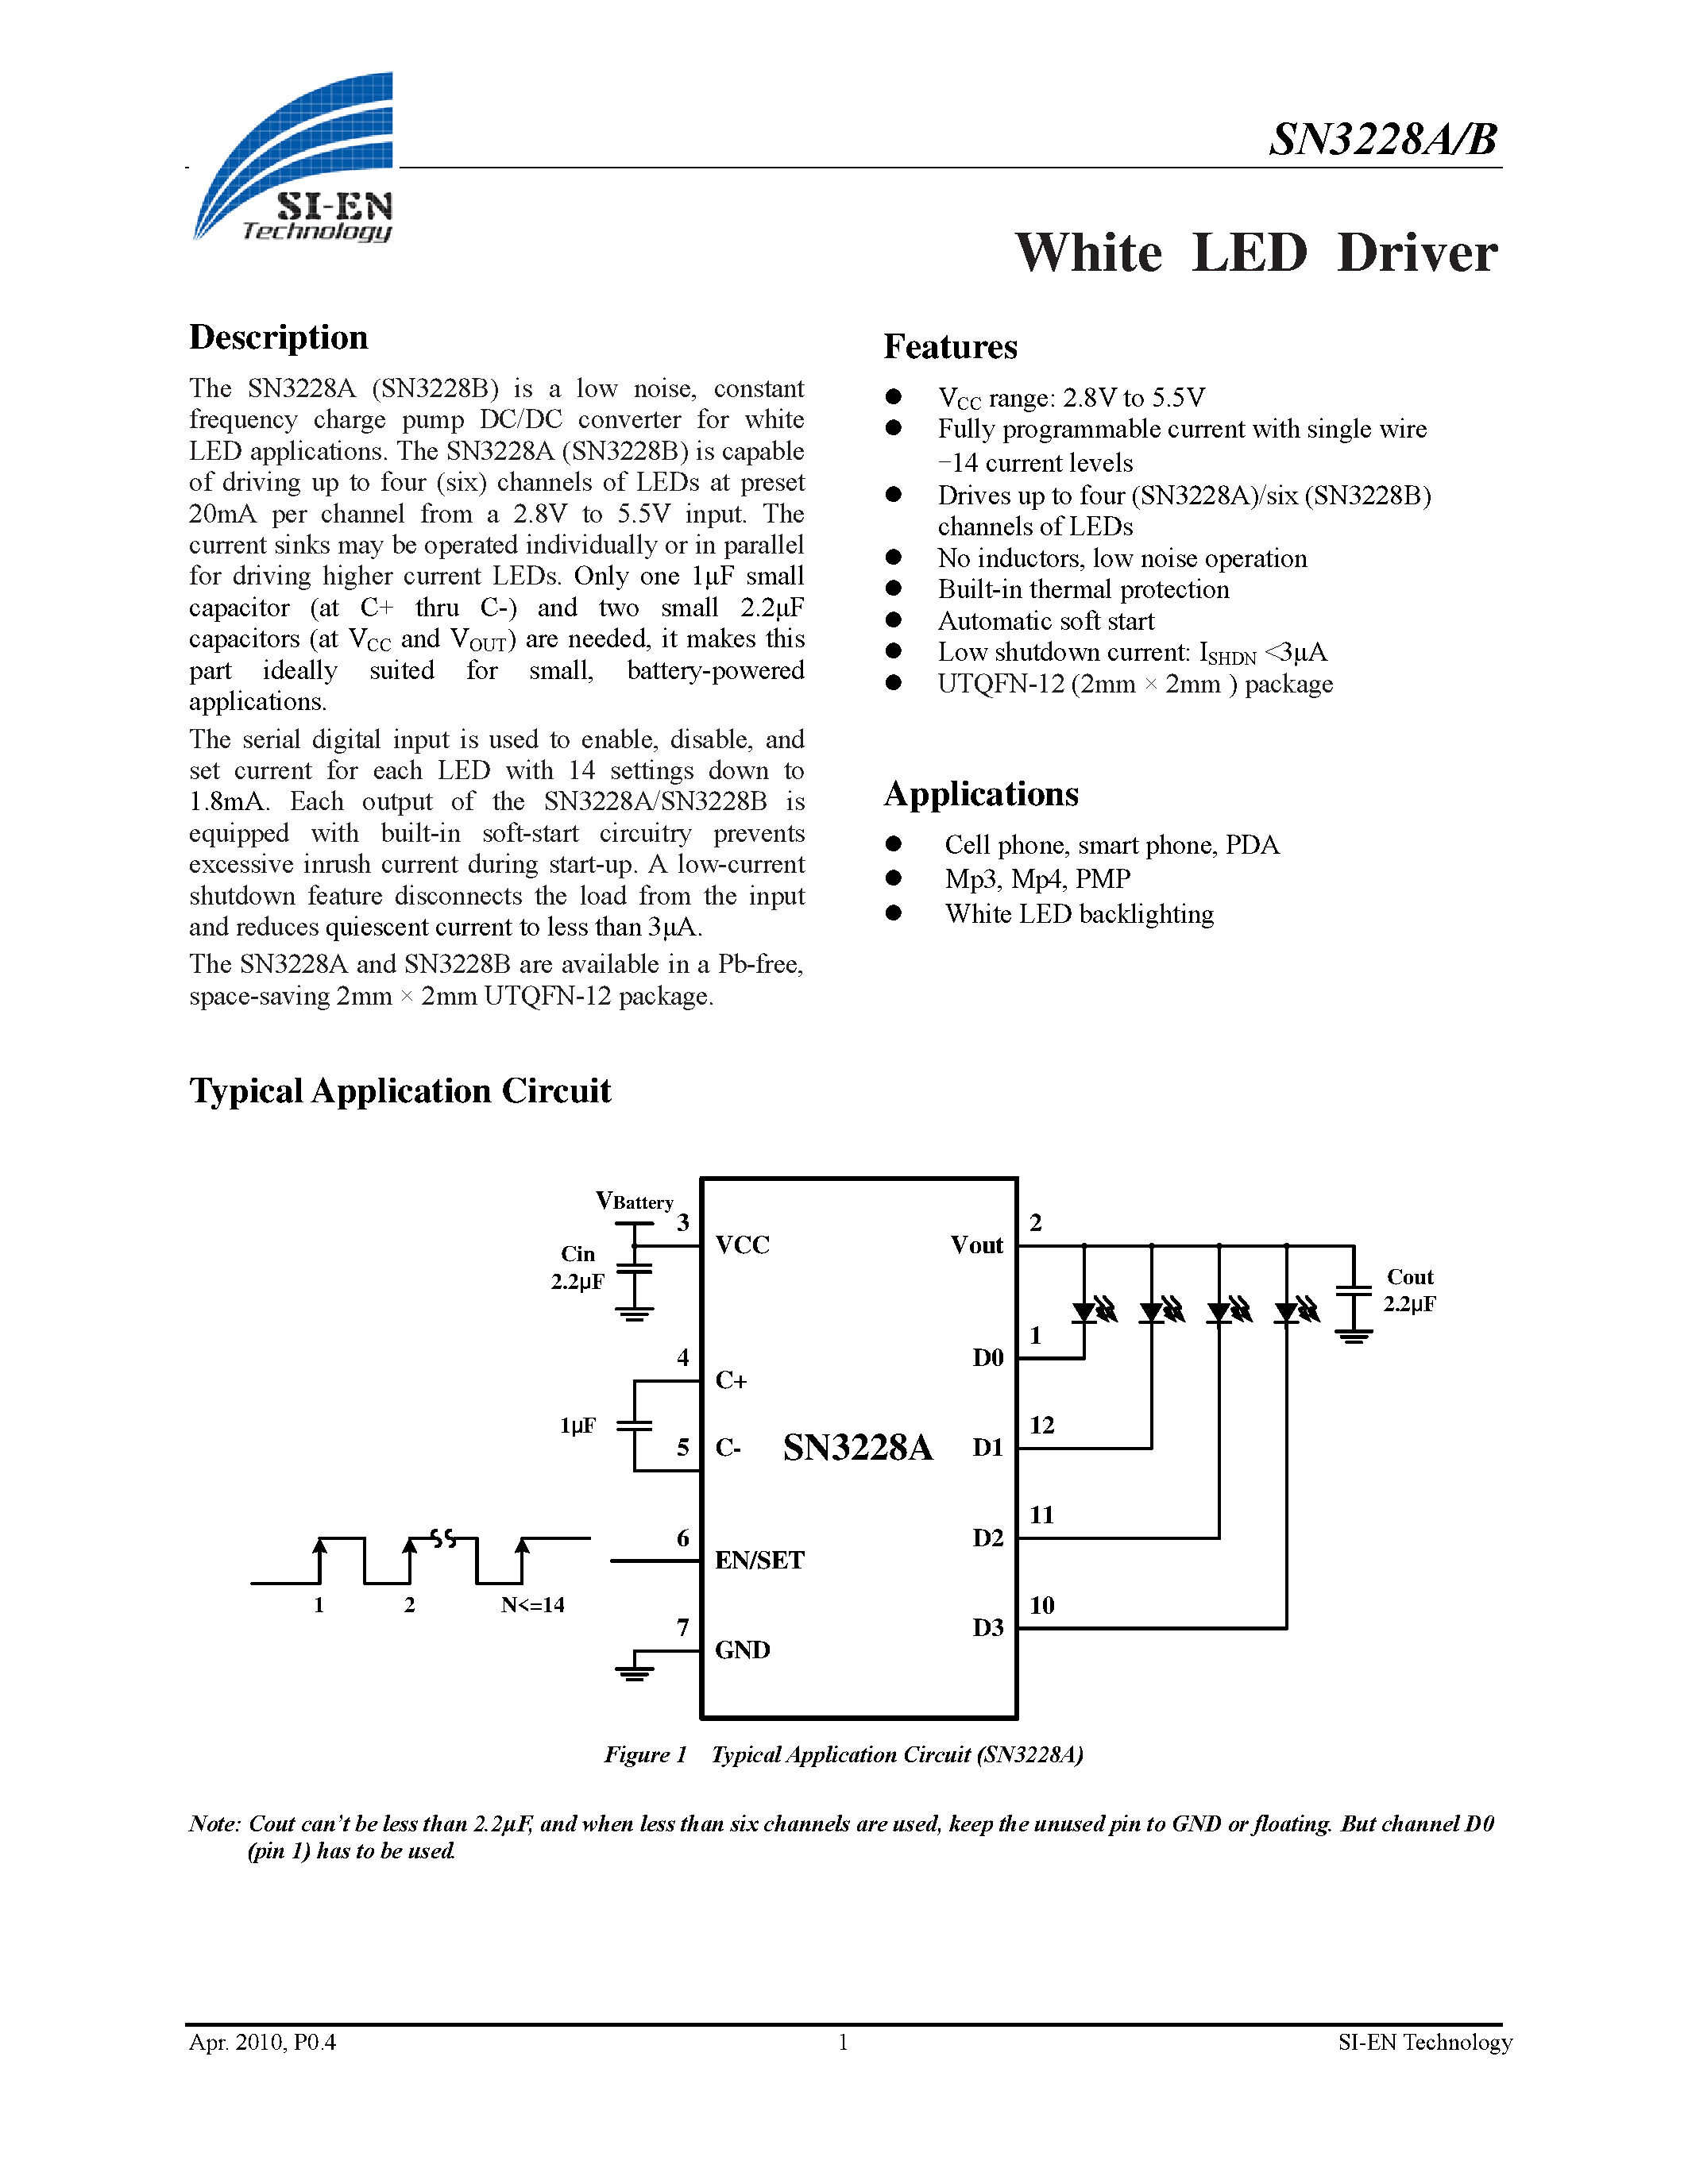 Datasheet SN3228A - (SN3228A/B) White LED Driver page 1